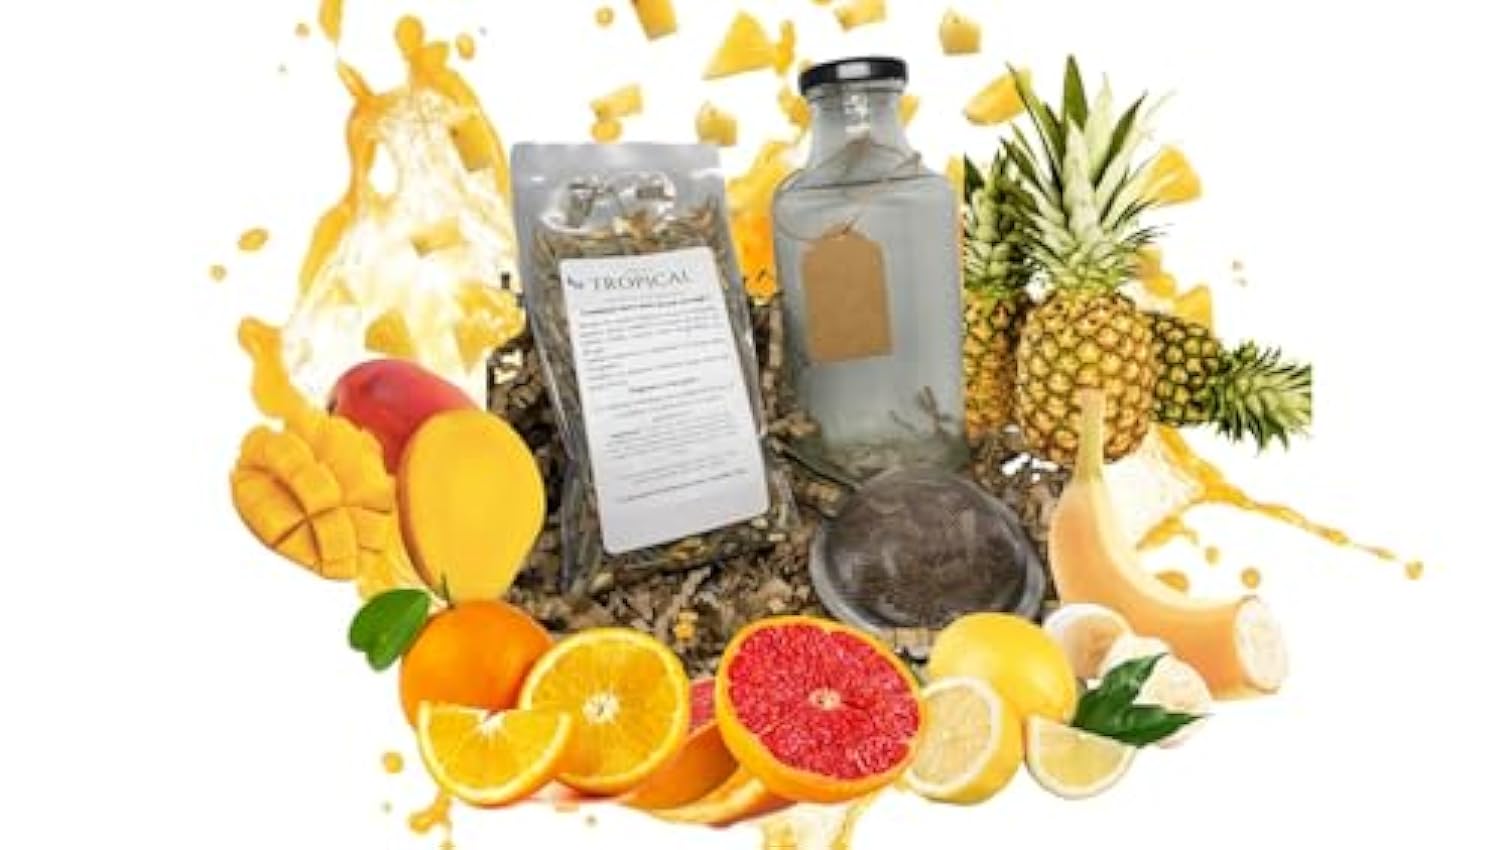 Kit rhum arrangé - Kit Gin arrangé - DIY (Do It Yourself) - Parfum Passion (mangue, papaye, noix de coco et ananas mw62VlUD